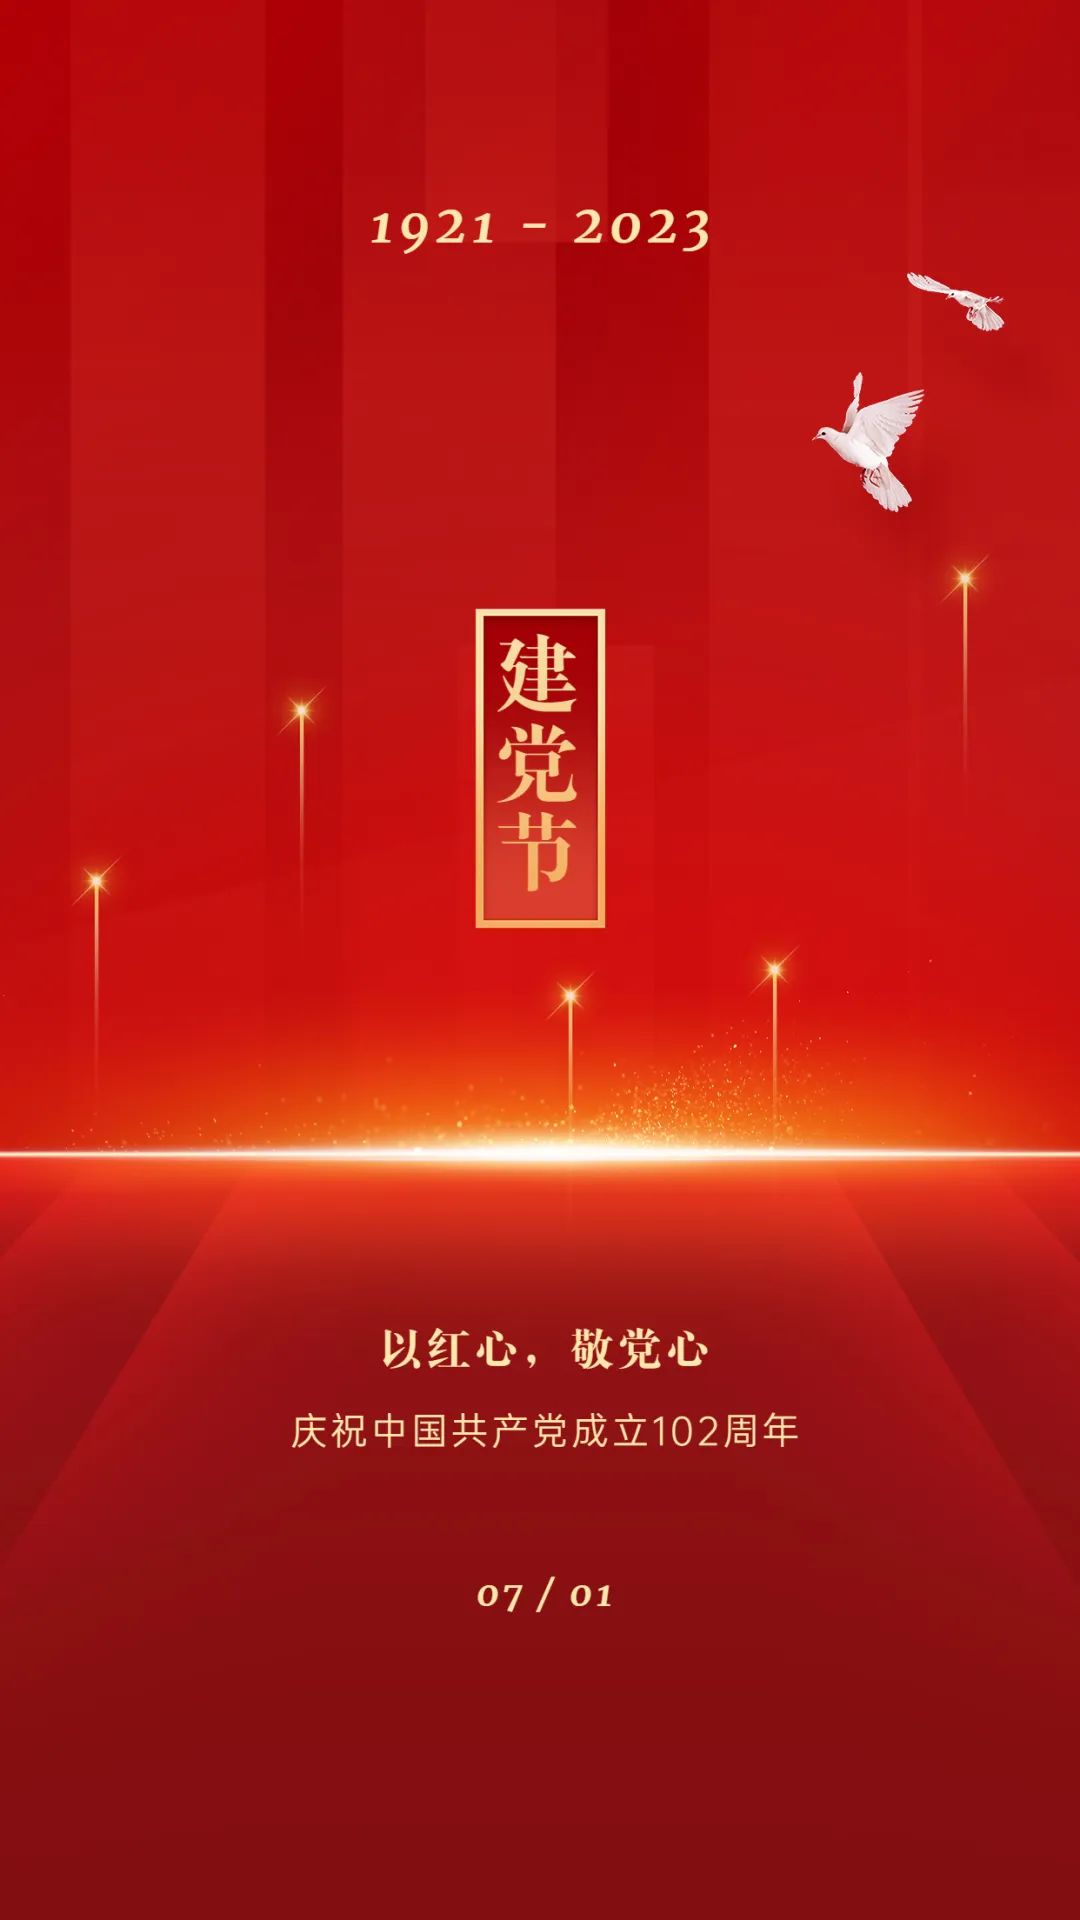 【宣传海报】庆祝建党102周年!